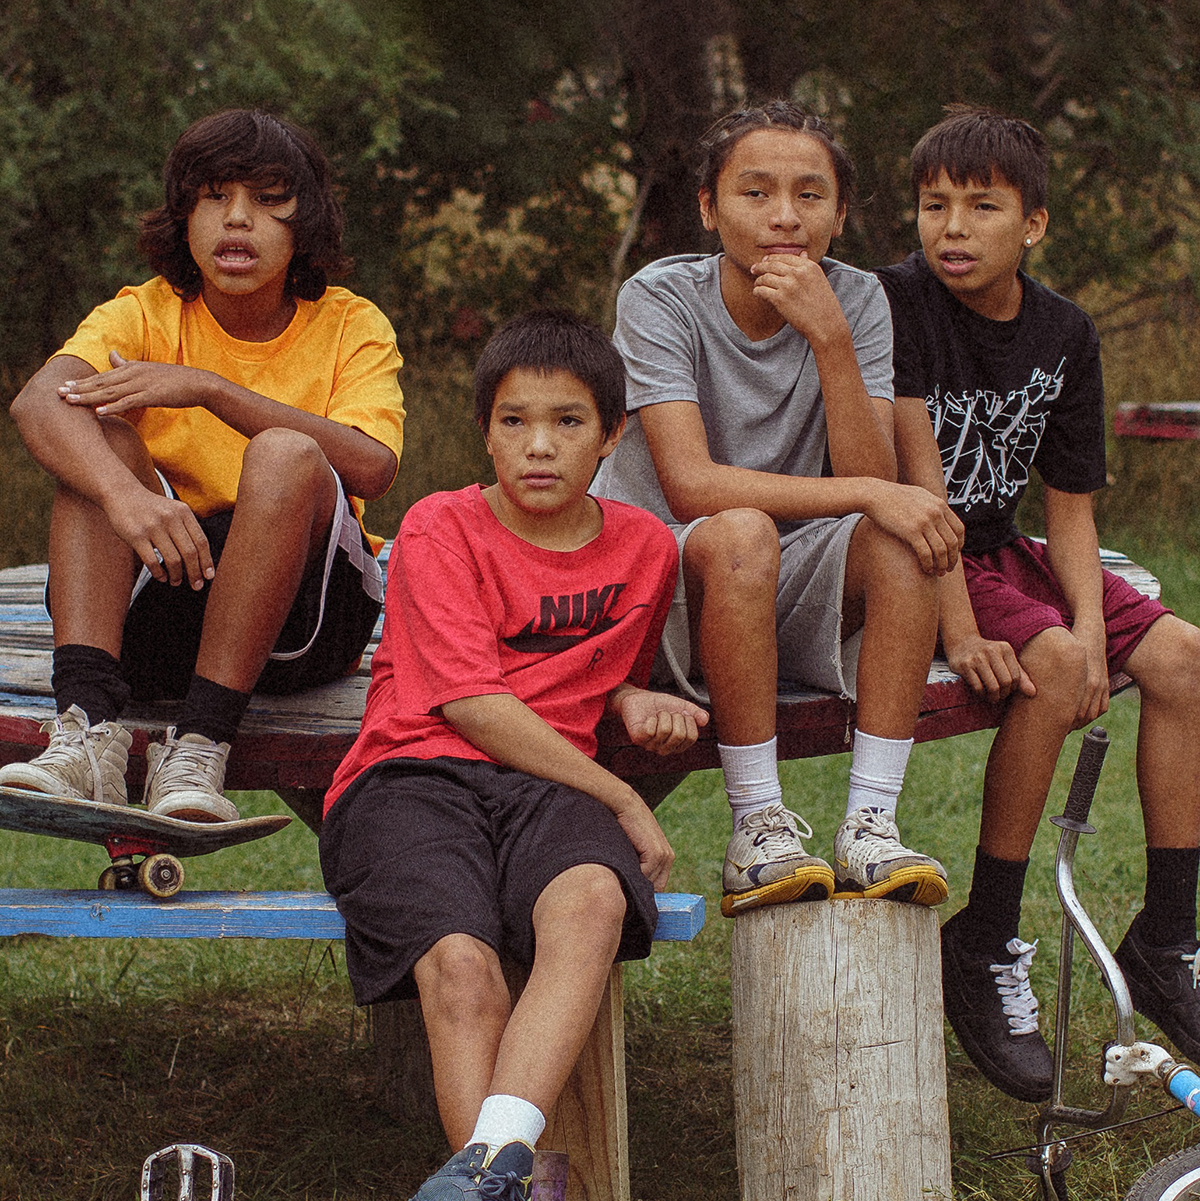 Fyra ungdomar med cyklar och skateboard sitter utomhus,